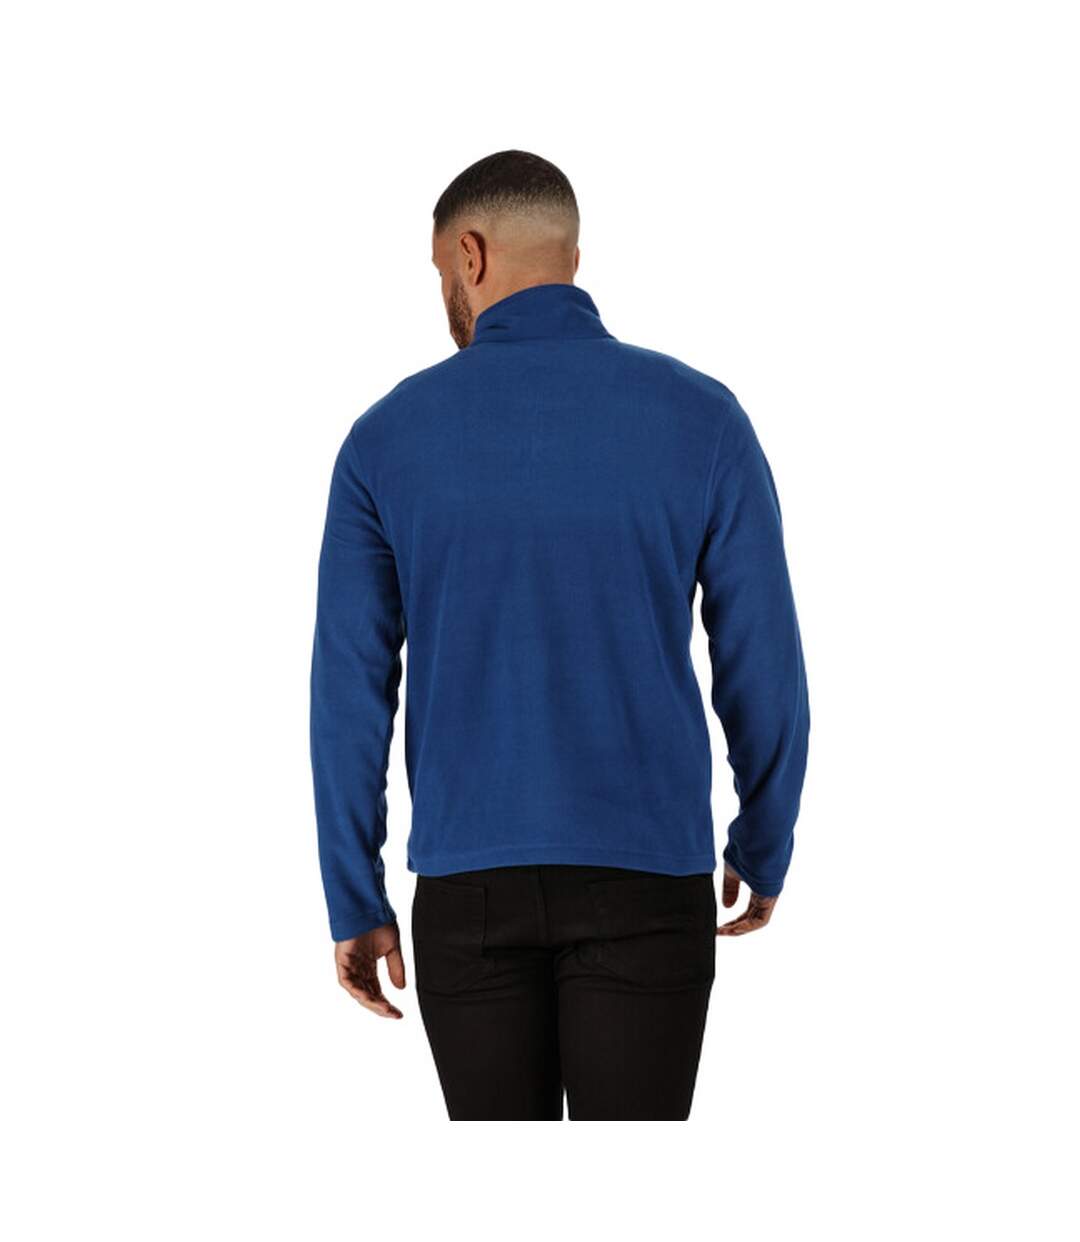 Regatta Mens Micro Zip Neck Fleece Top (Royal Blue) - UTRG1580